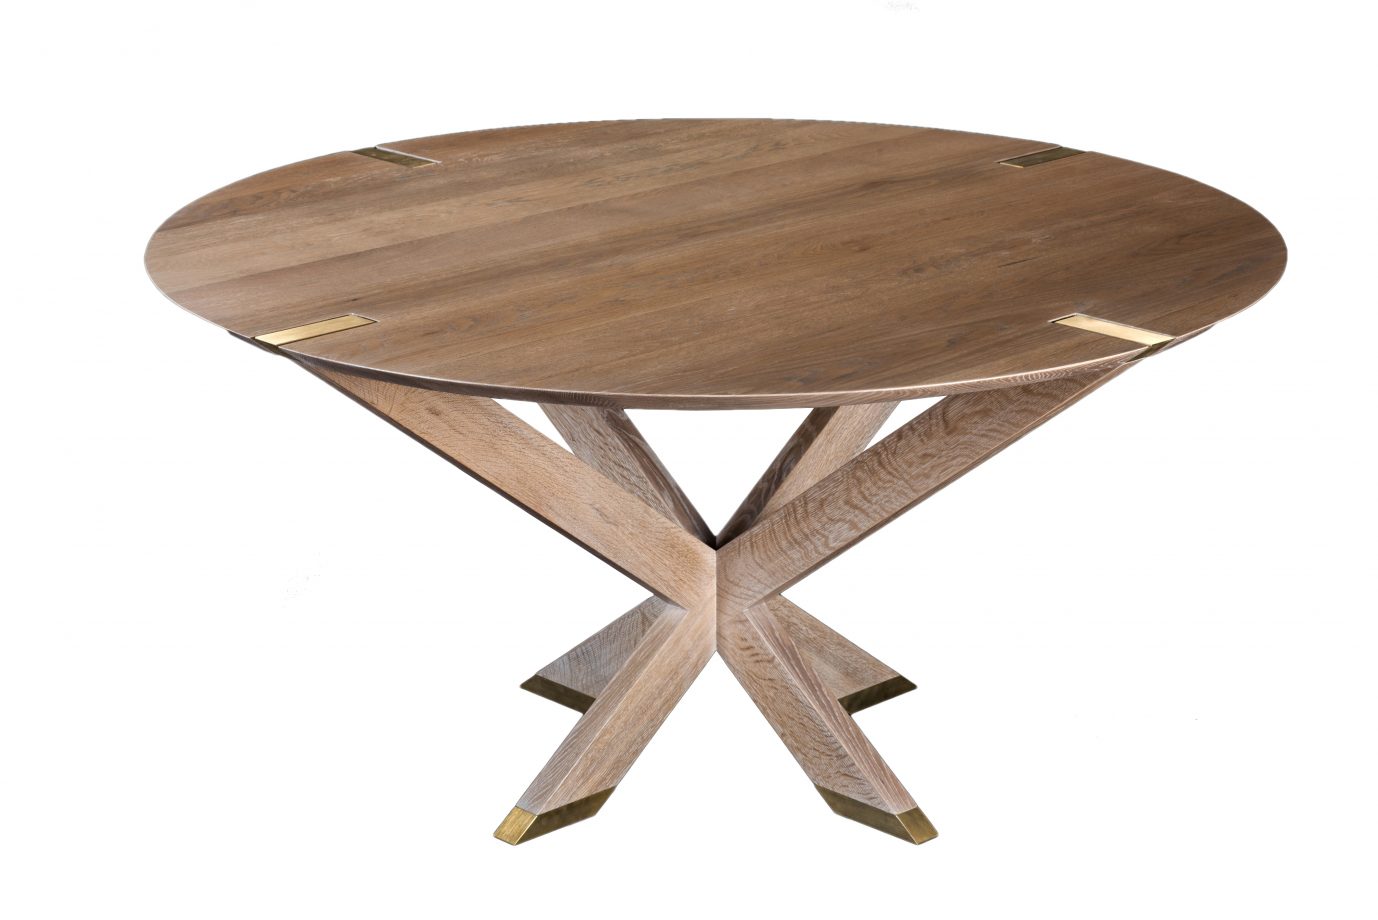 Newton Table. Shown in white oak with Newton finish.